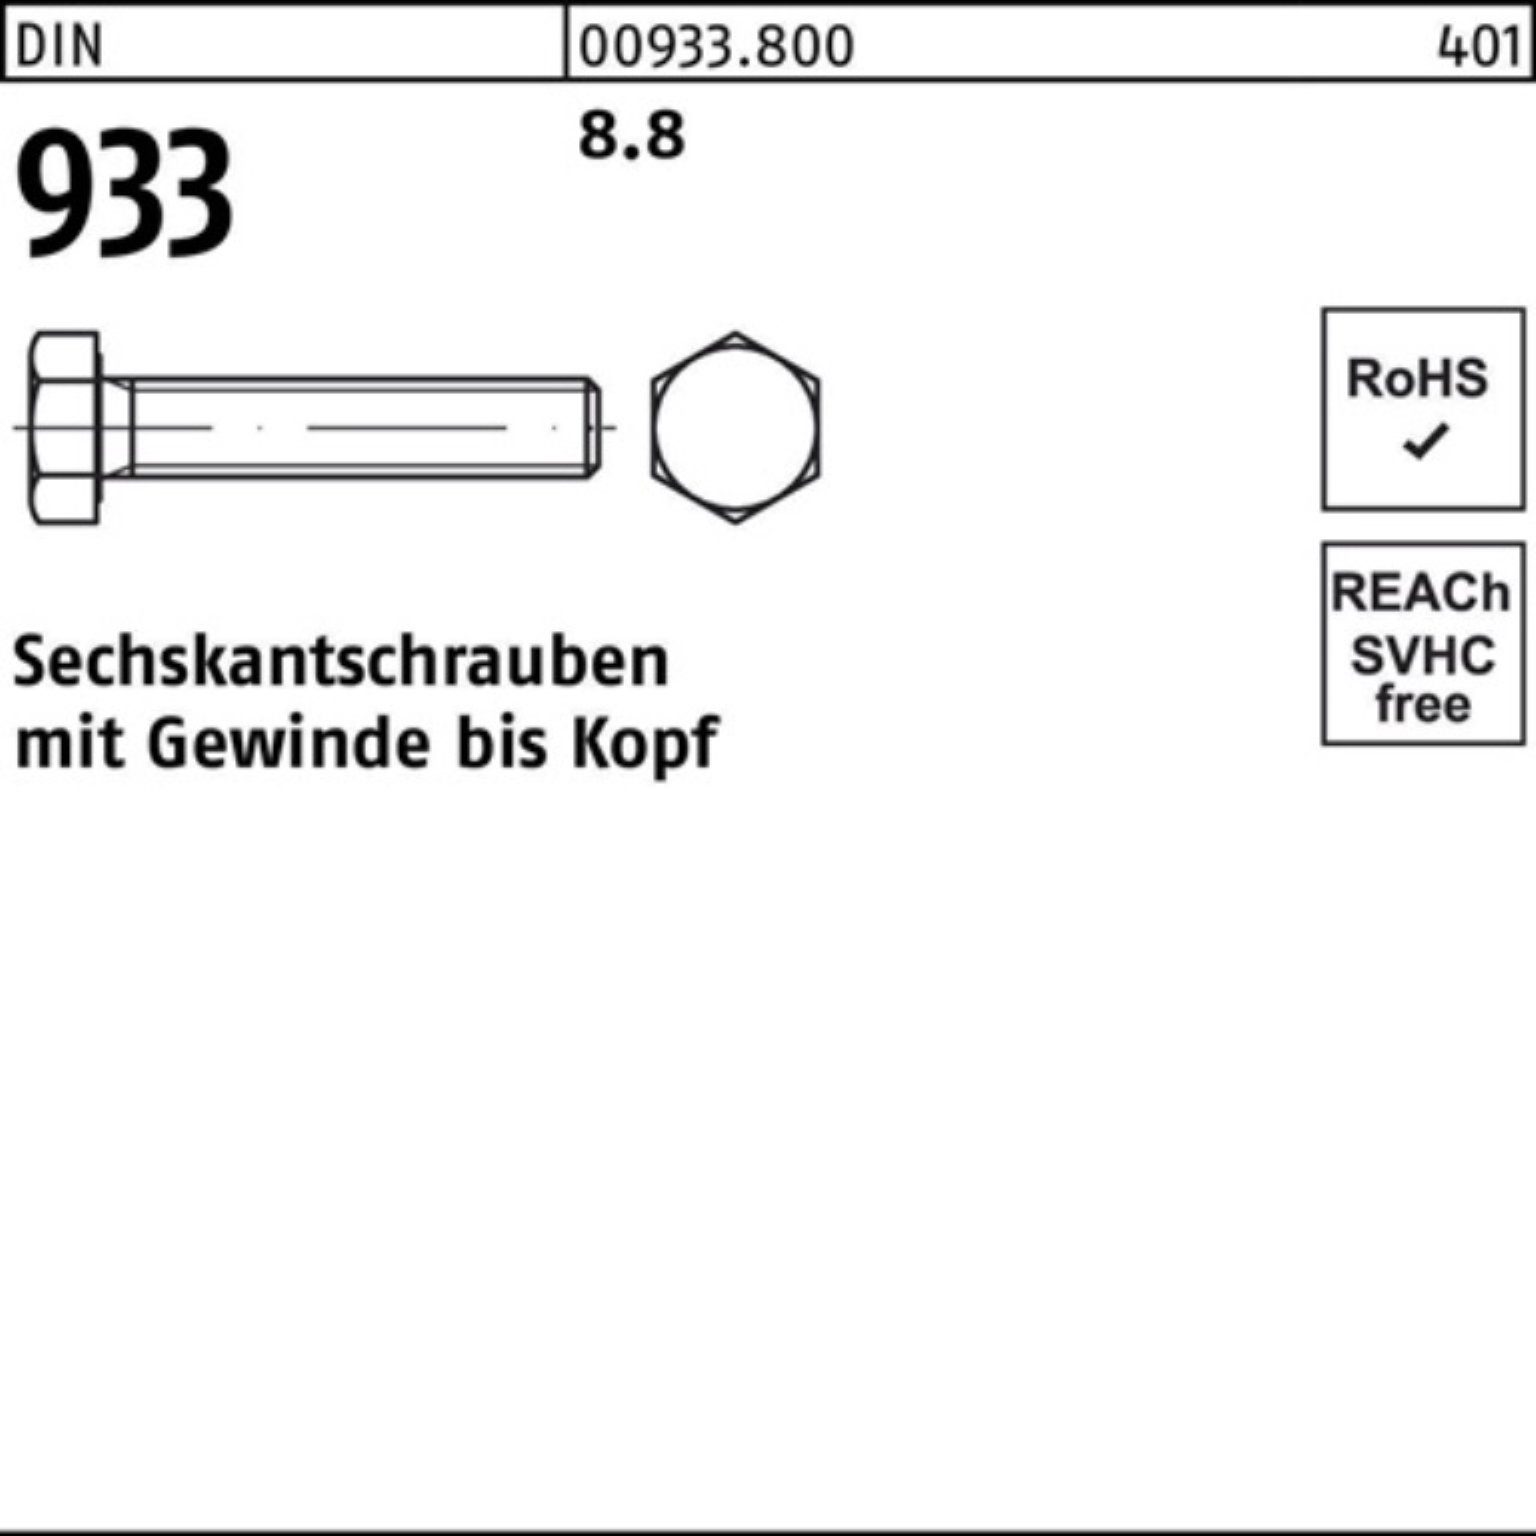 Reyher Sechskantschraube 200er Pack Sechskantschraube Stück M5x DIN DIN VG 8.8 933 933 200 40